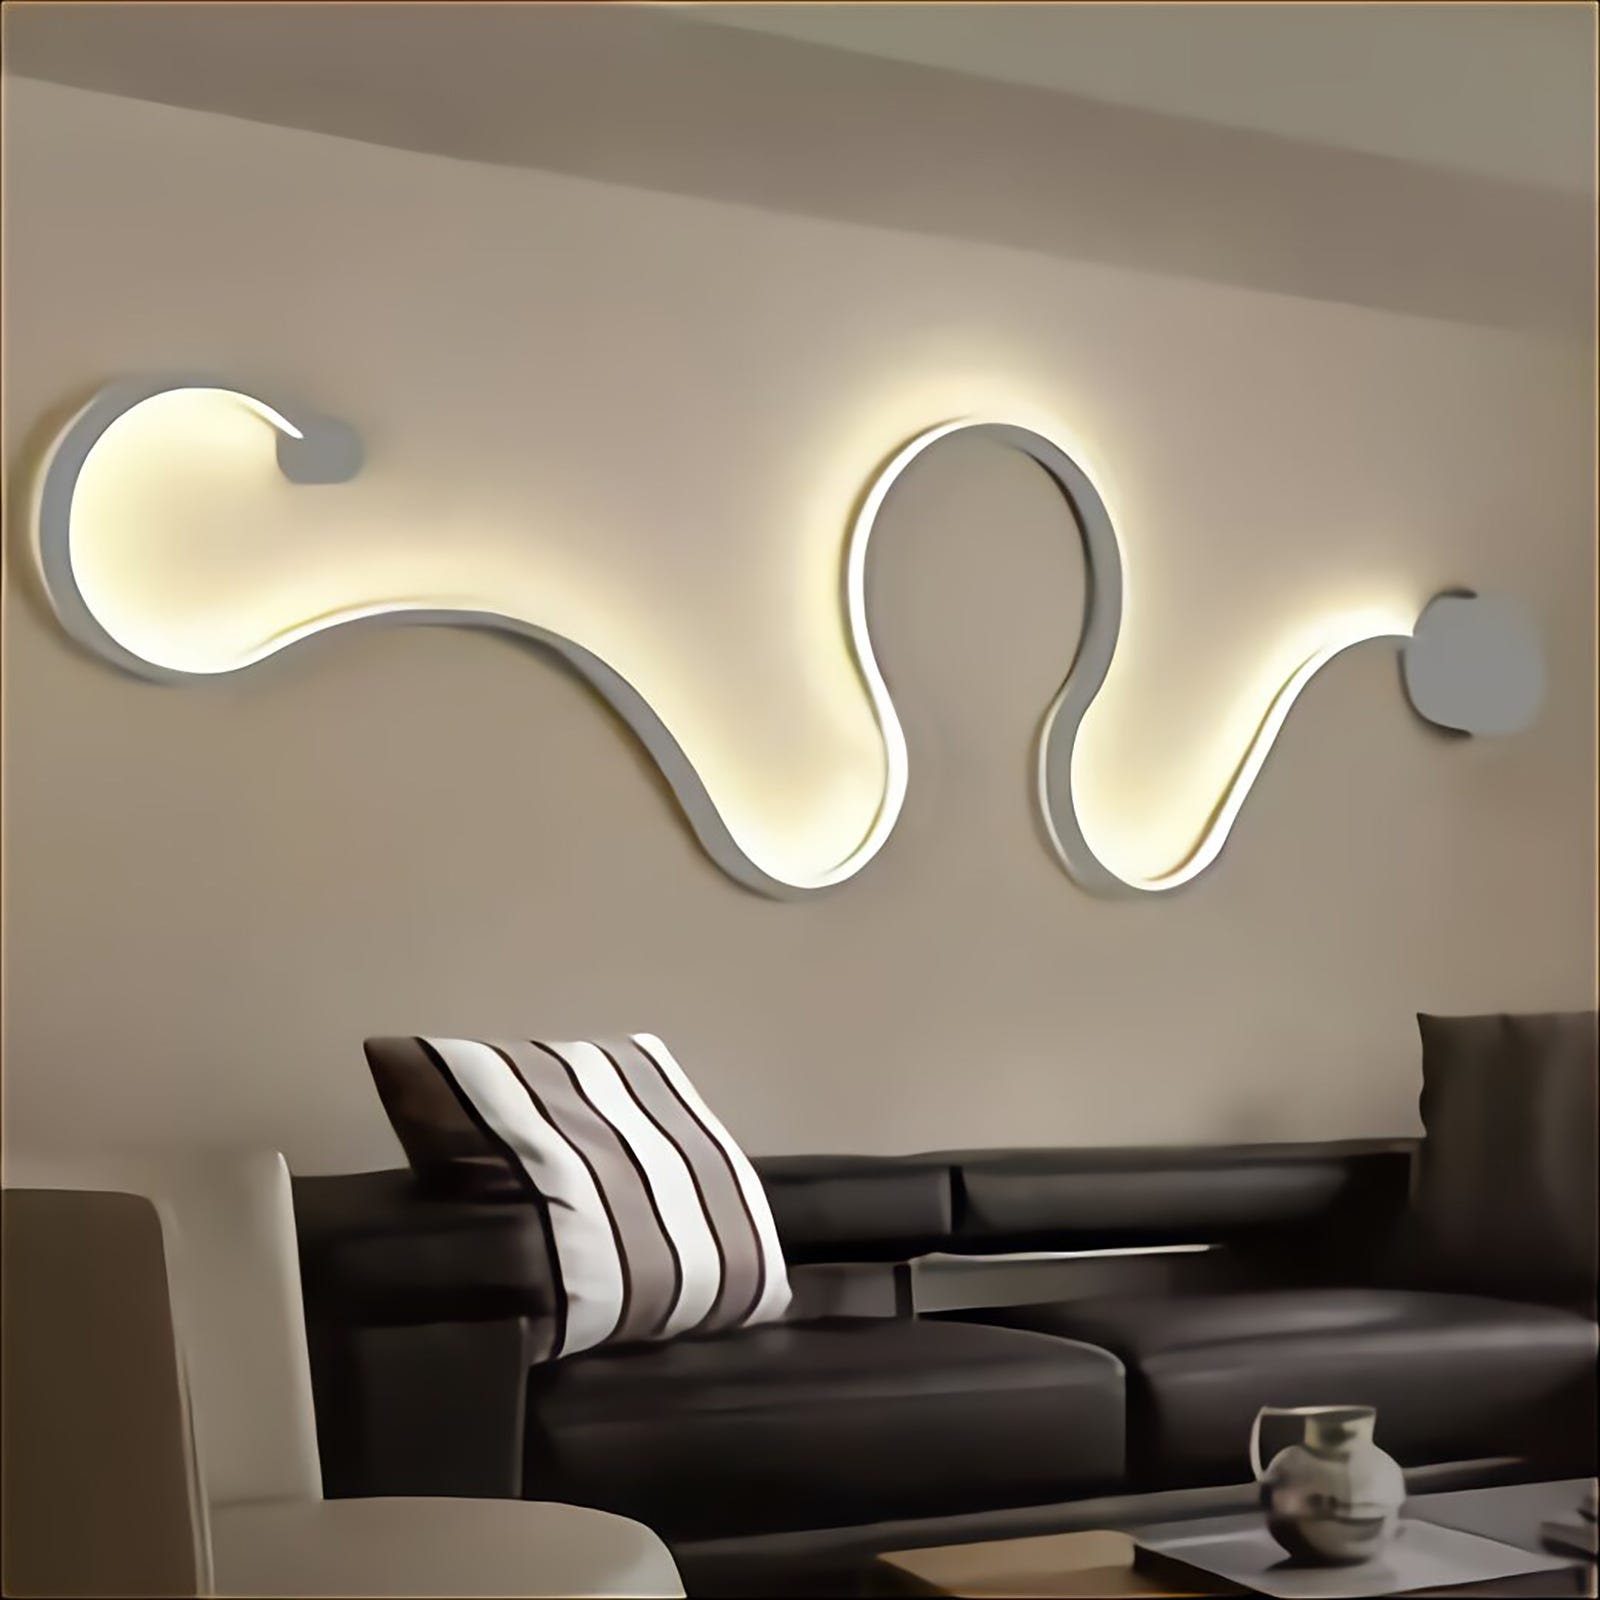 Applique moderno LED 28W bianco lampada curva snake luce parete muro  soggiorno camera letto 230V LUCE 6500K